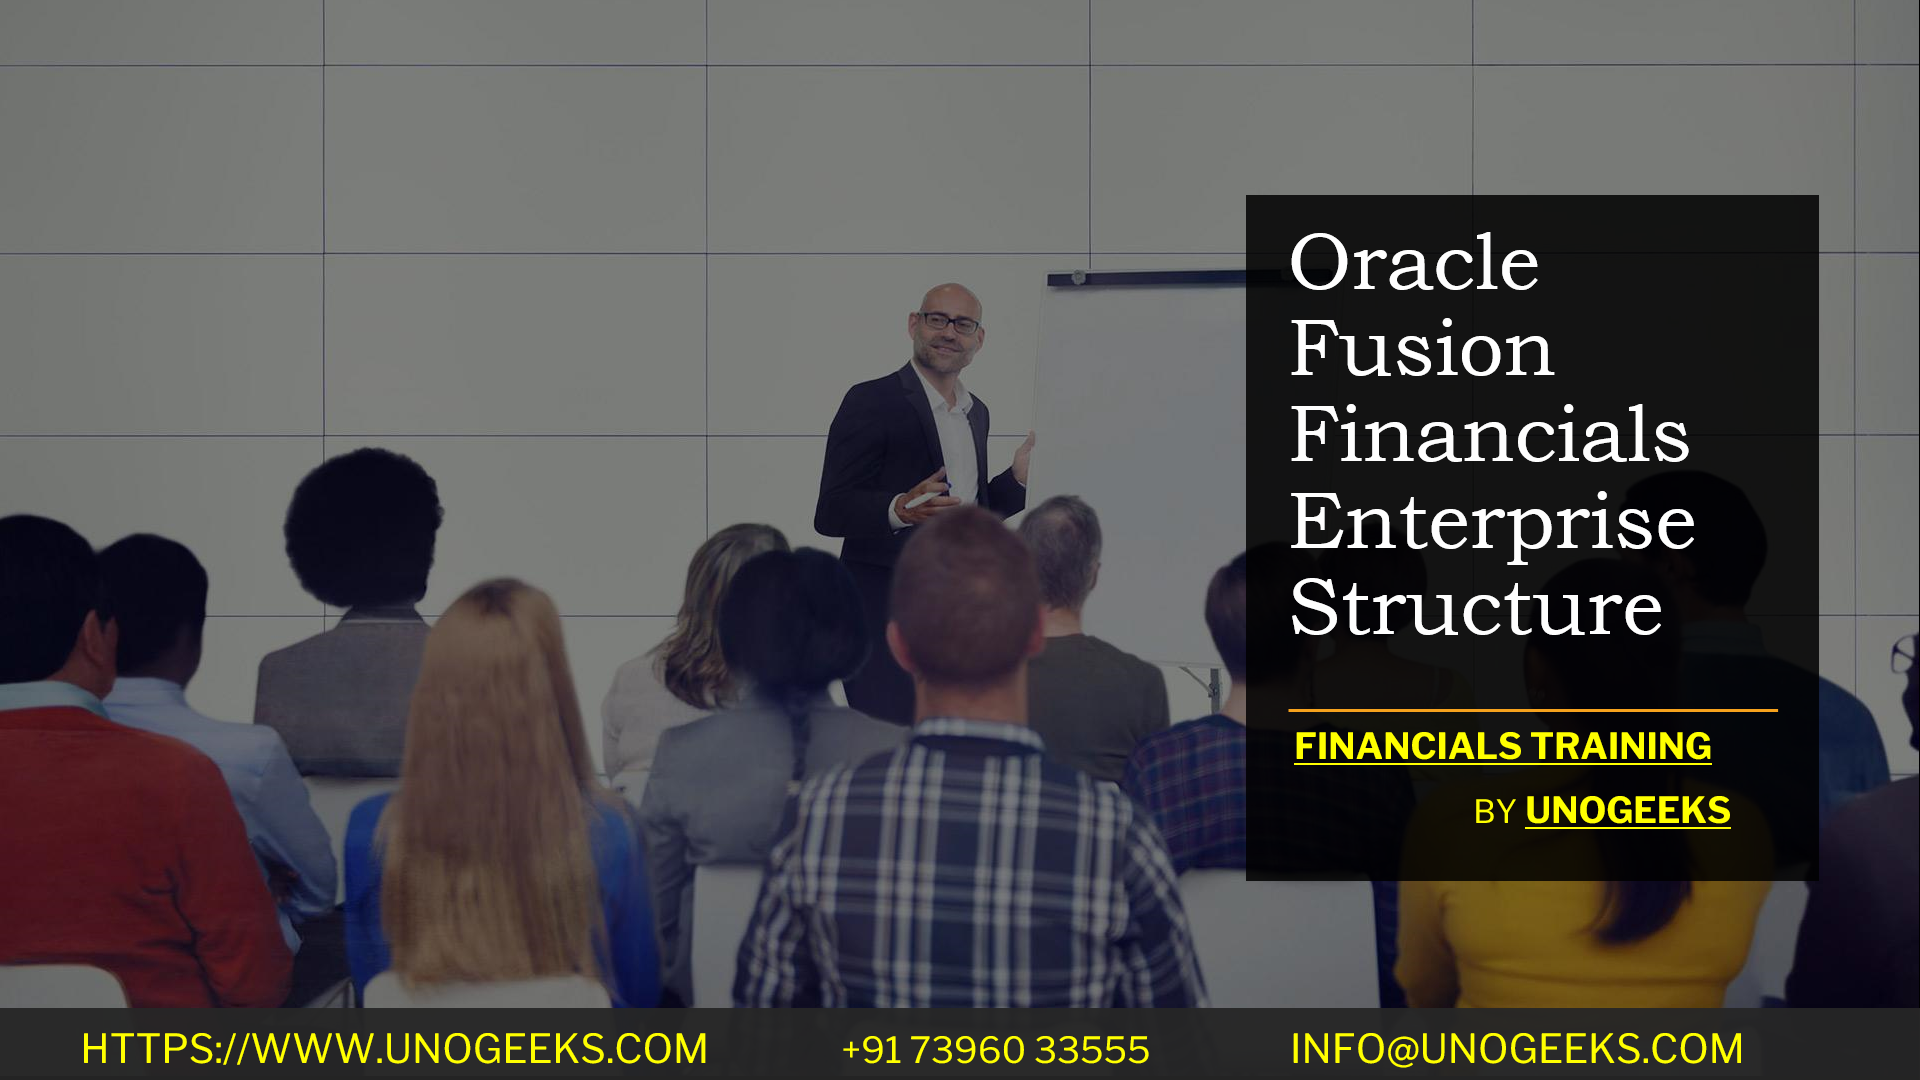 Oracle Fusion Financials Enterprise Structure